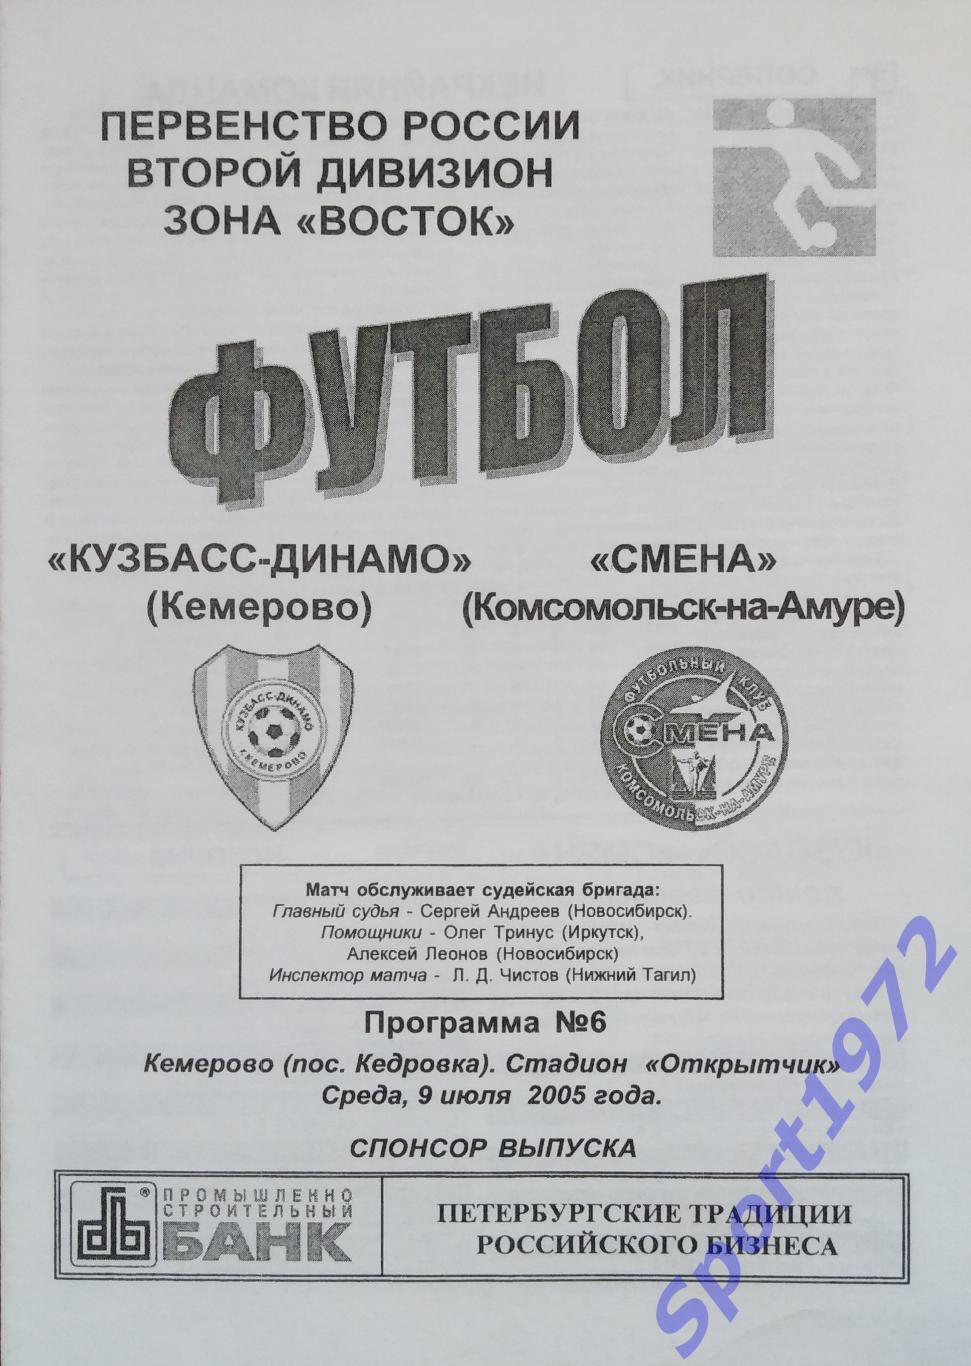 Кузбасс-Динамо Кемерово - Смена Комсомольск-на-Амуре - 09.07.2005.